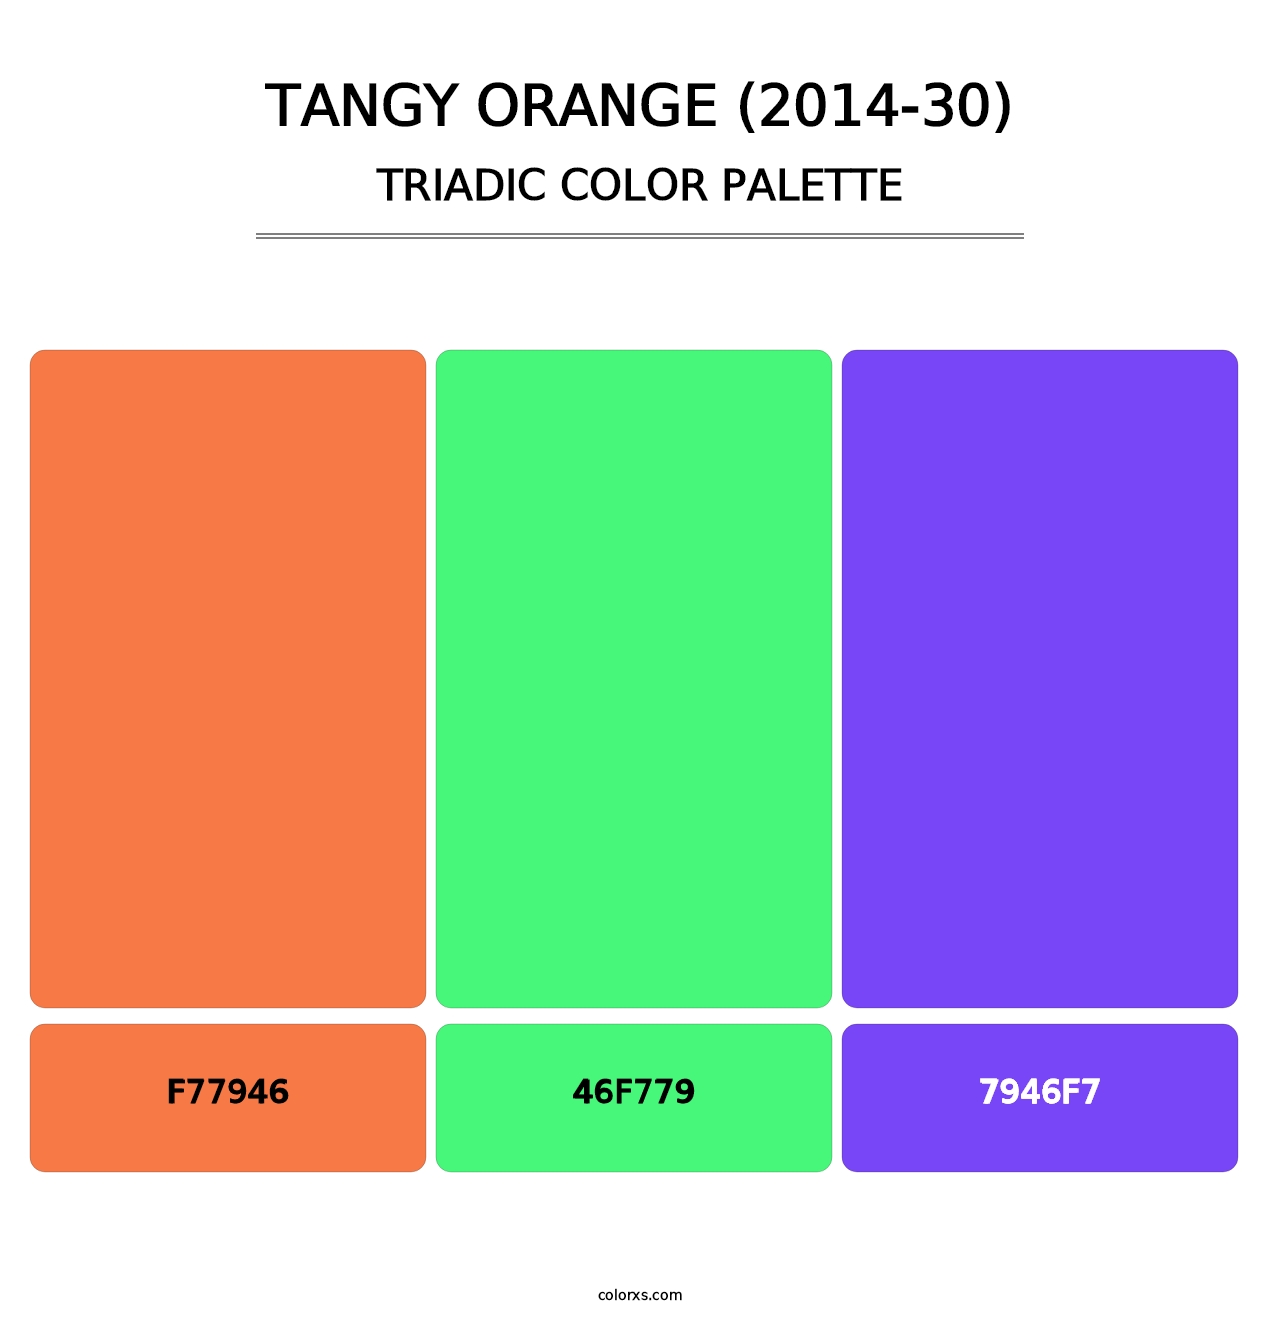 Tangy Orange (2014-30) - Triadic Color Palette